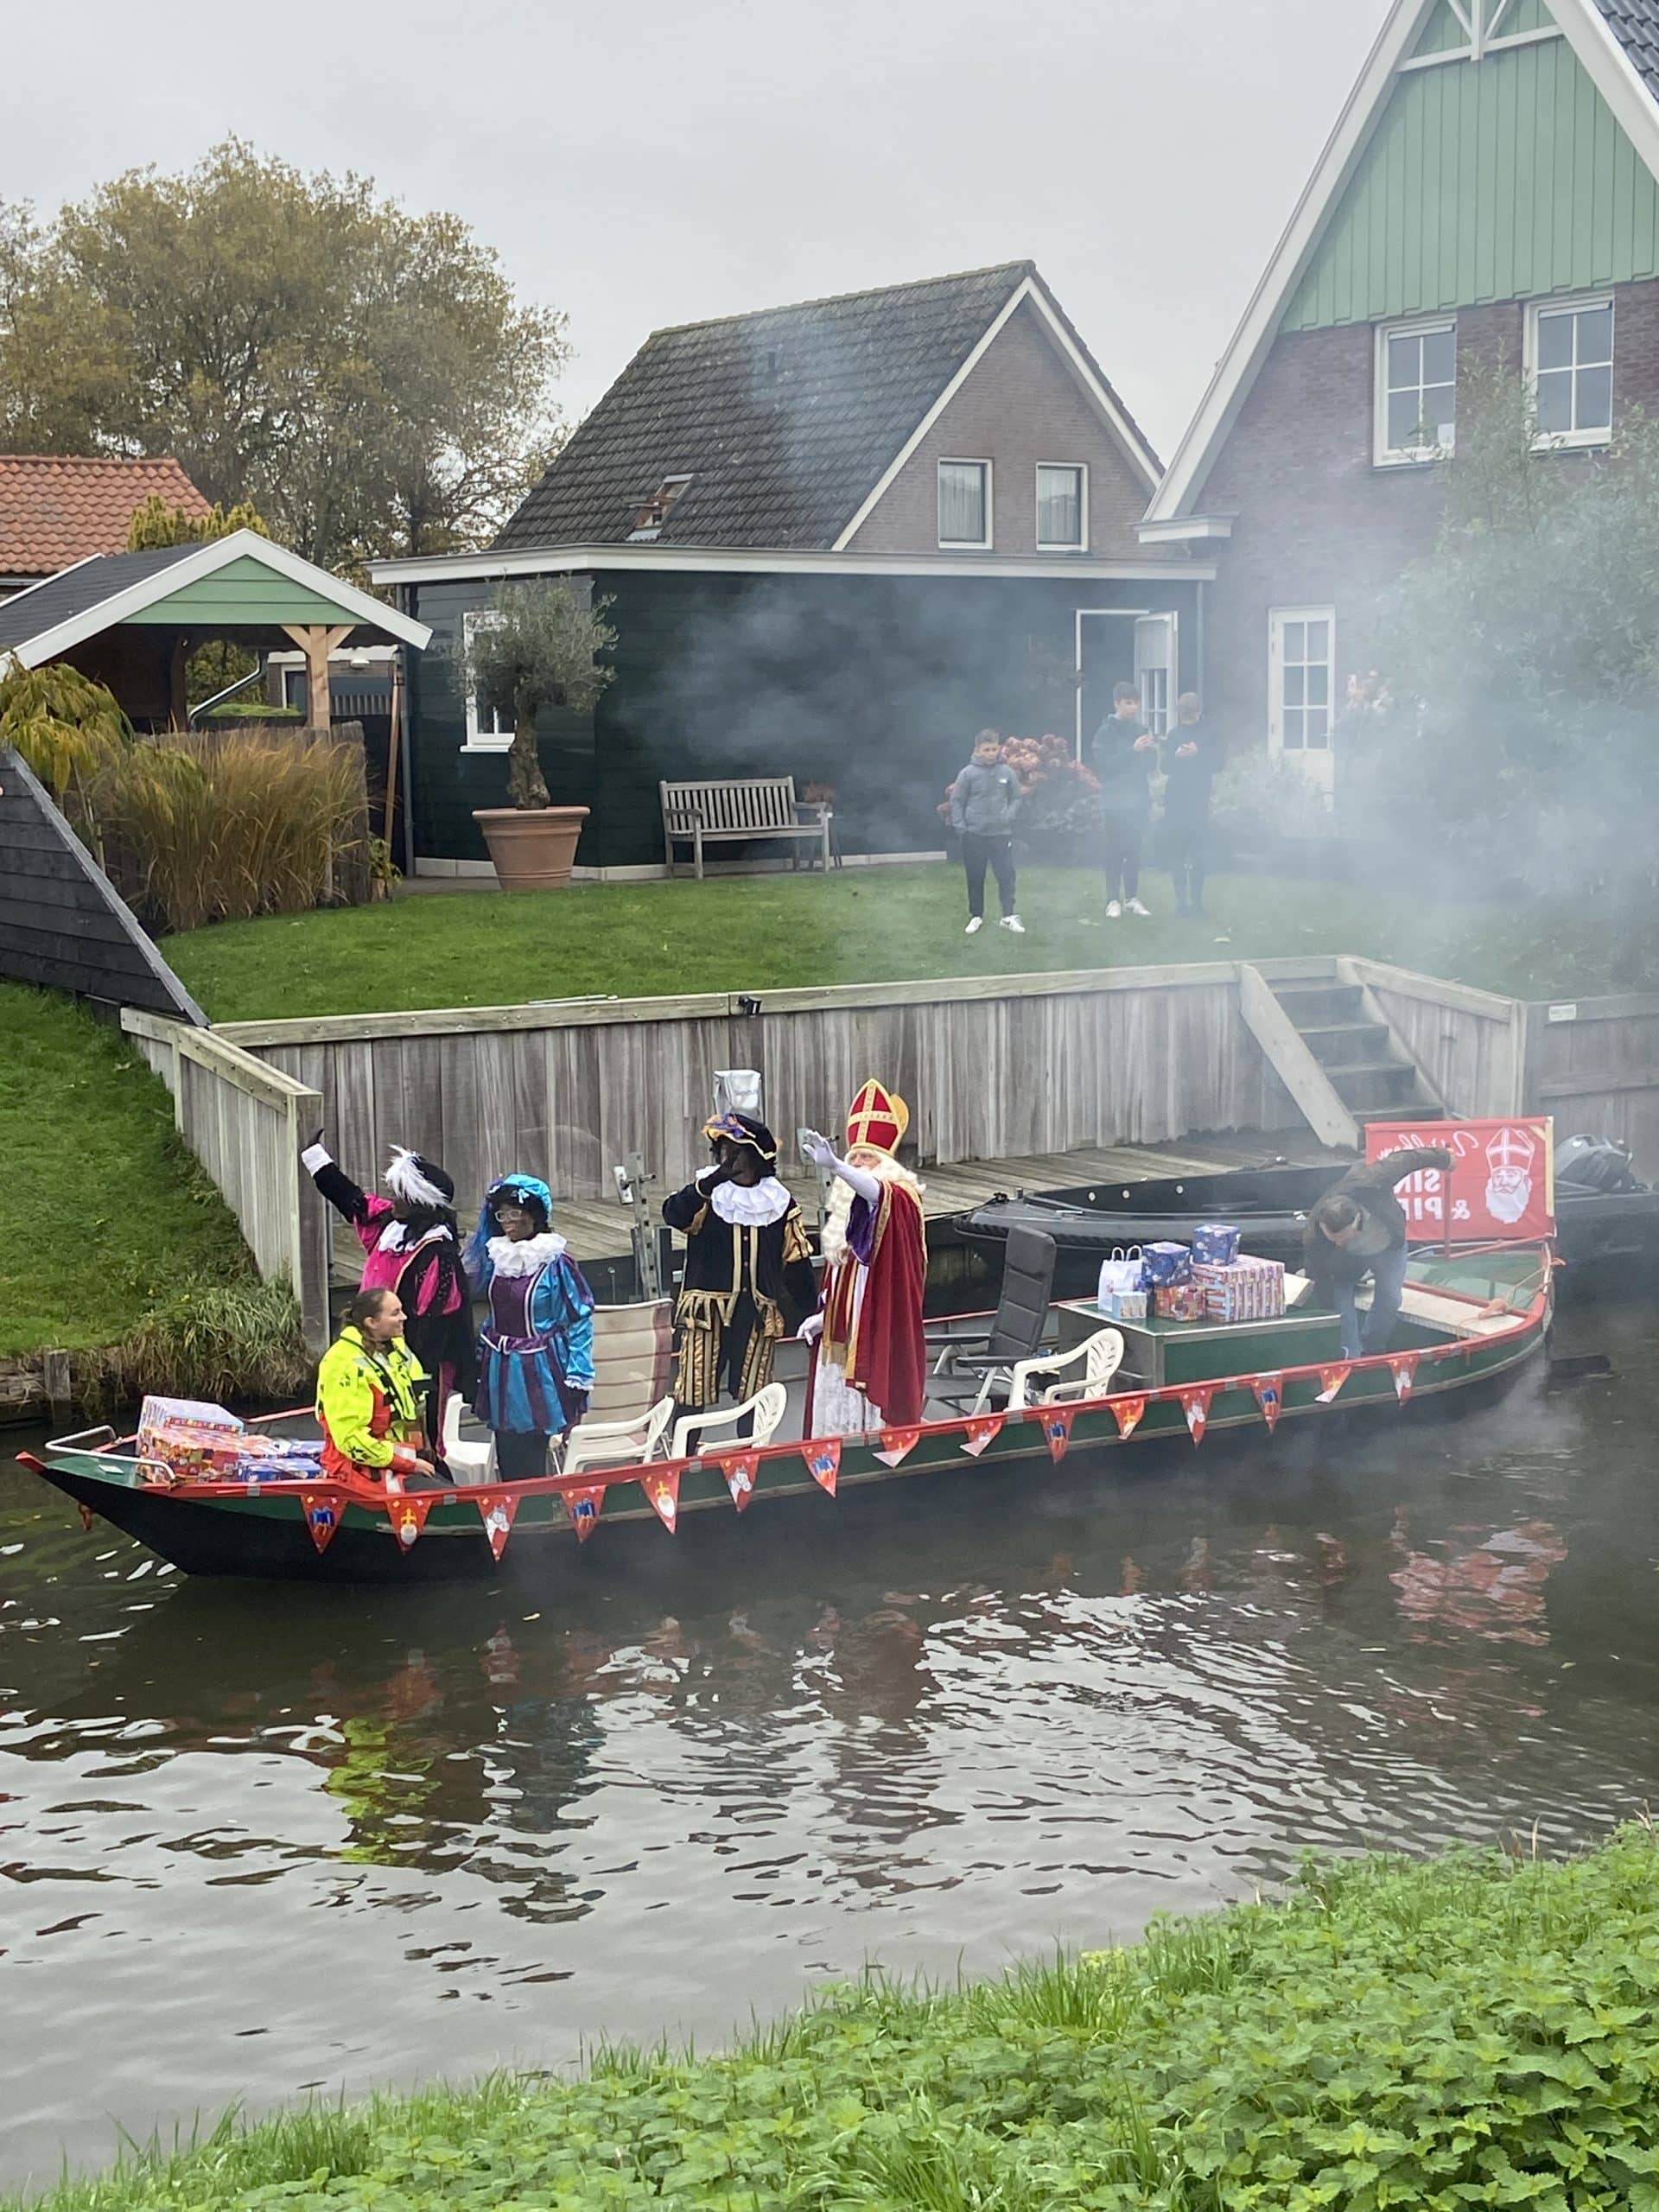 Sinterklaas coming in on a boat